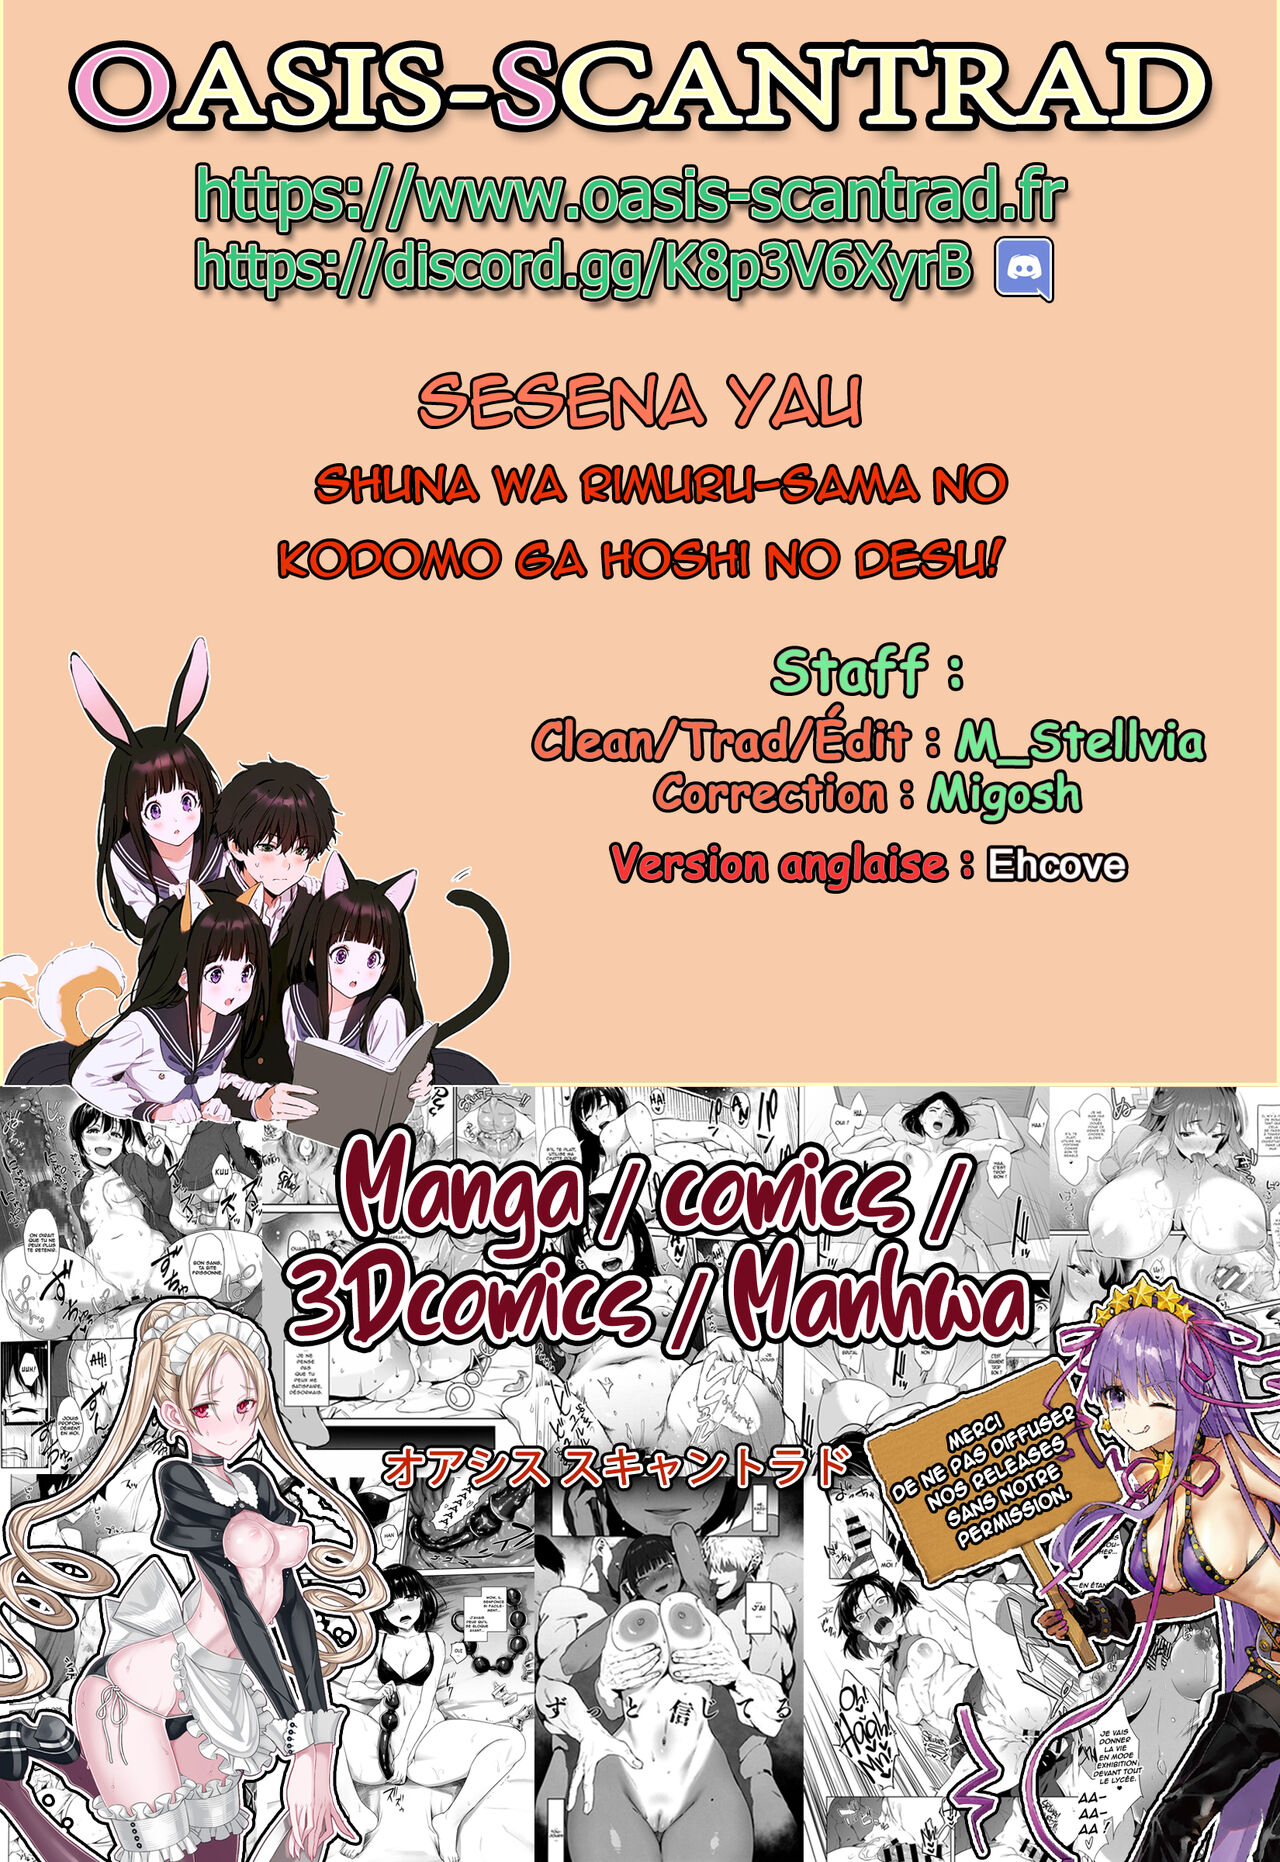 Shuna wa Rimuru-sama no Kodomo ga Hoshii no desu!  Shuna wants Rimuru-samas children! numero d'image 23